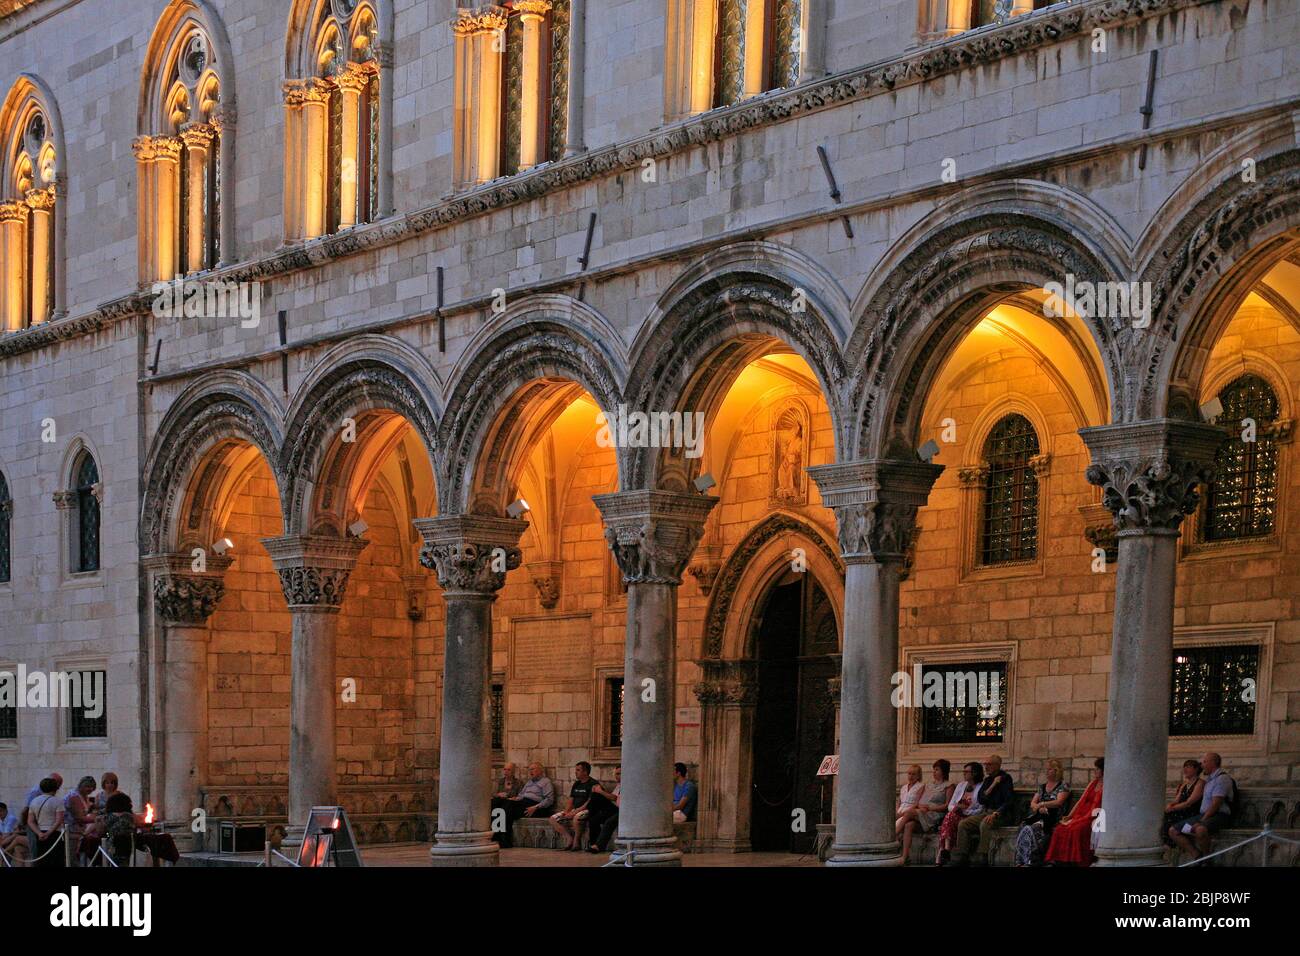 El Palacio de los Rectores era el corazón administrativo de la República de Dubrovnik. Construido en estilo gótico, con las reconstrucciones barroco y renacentista. Foto de stock